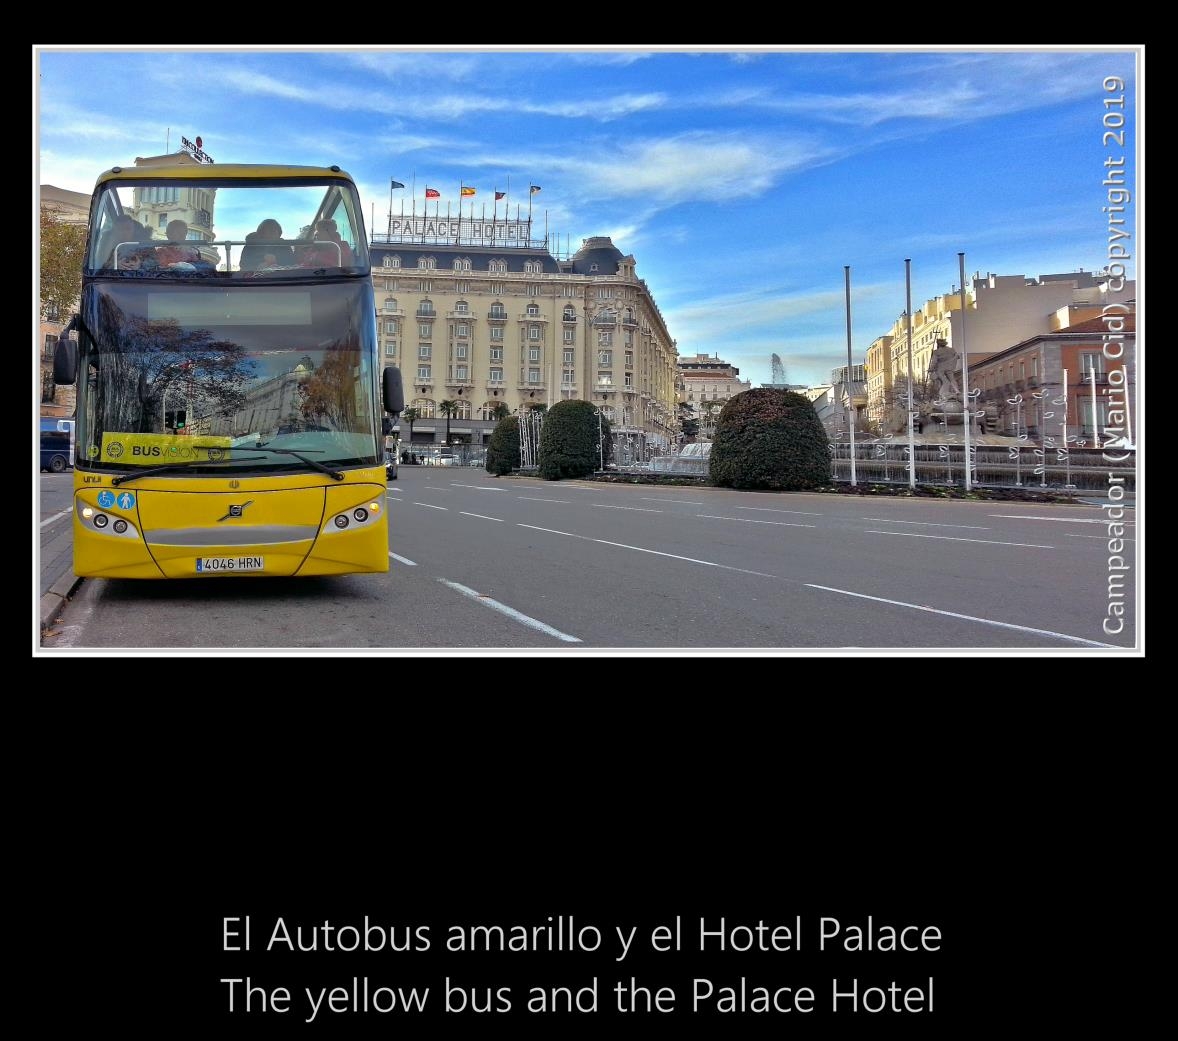 El autobus amarillo y el Hotel Palace - The yellow bus and the Palace Hotel. Photography by Campeador (Mario Cid).